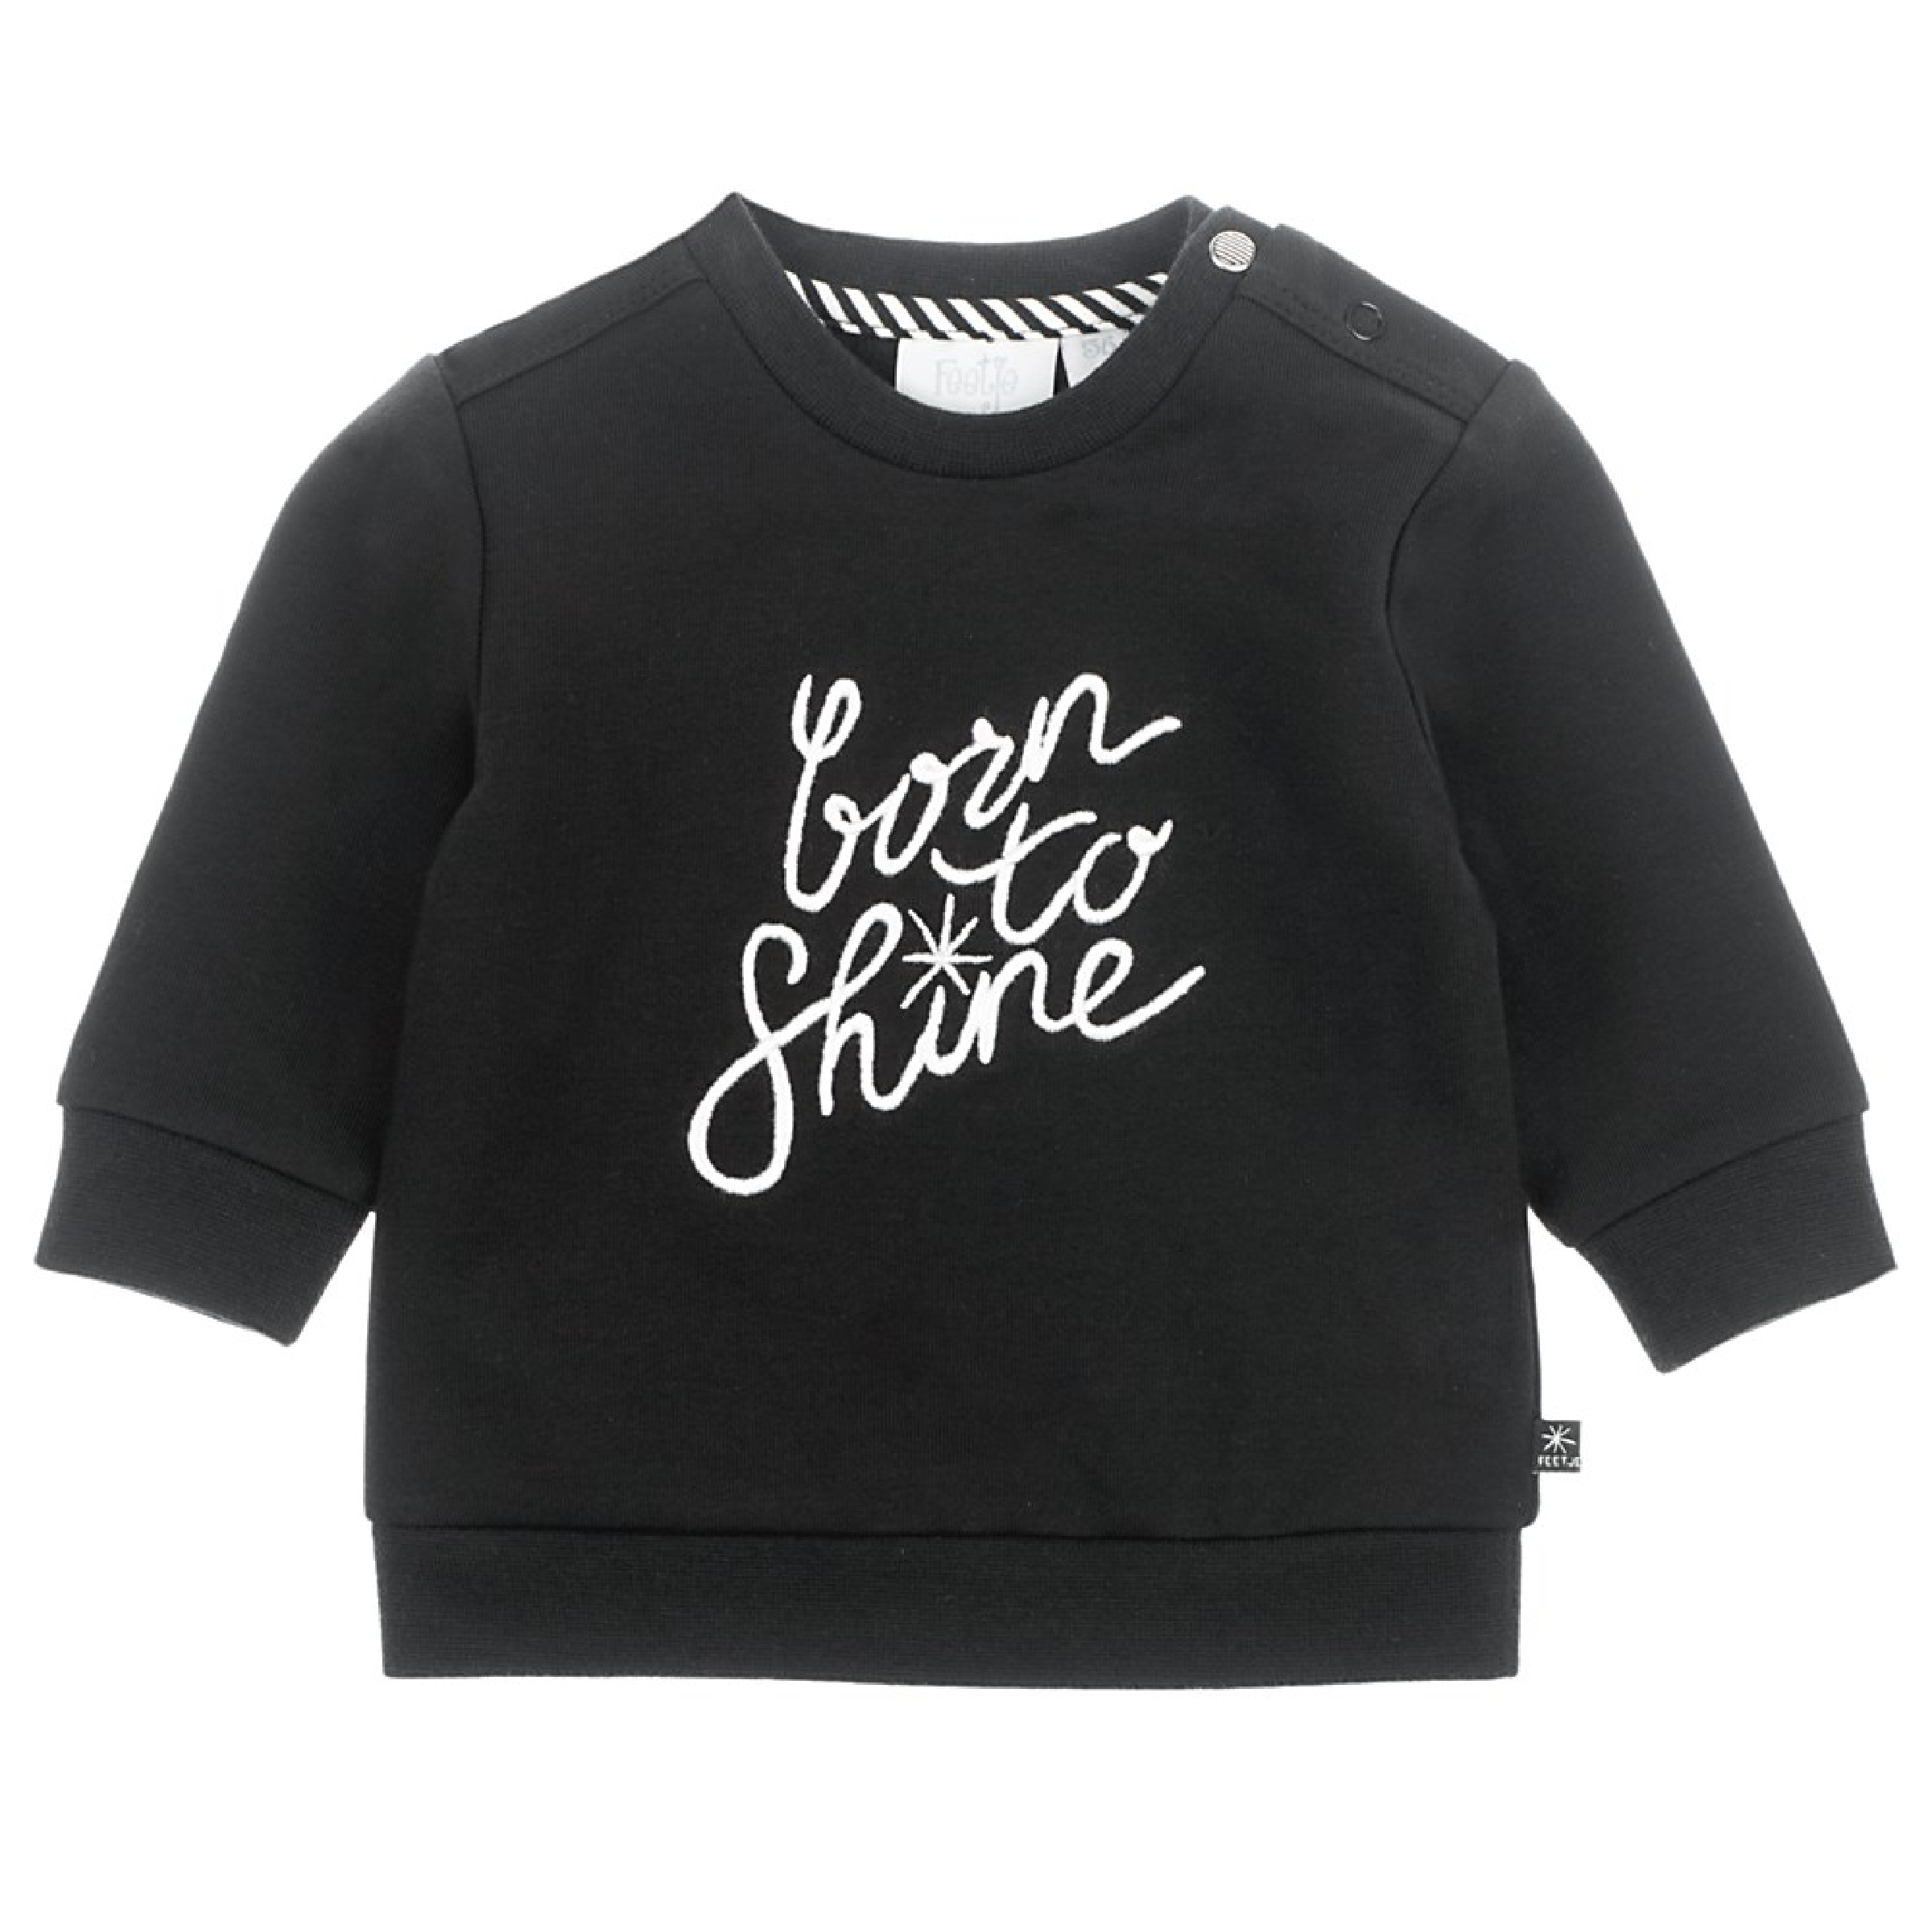 Unisexs Sweater Born To Shine - Hello World van Feetje in de kleur Zwart in maat 68.